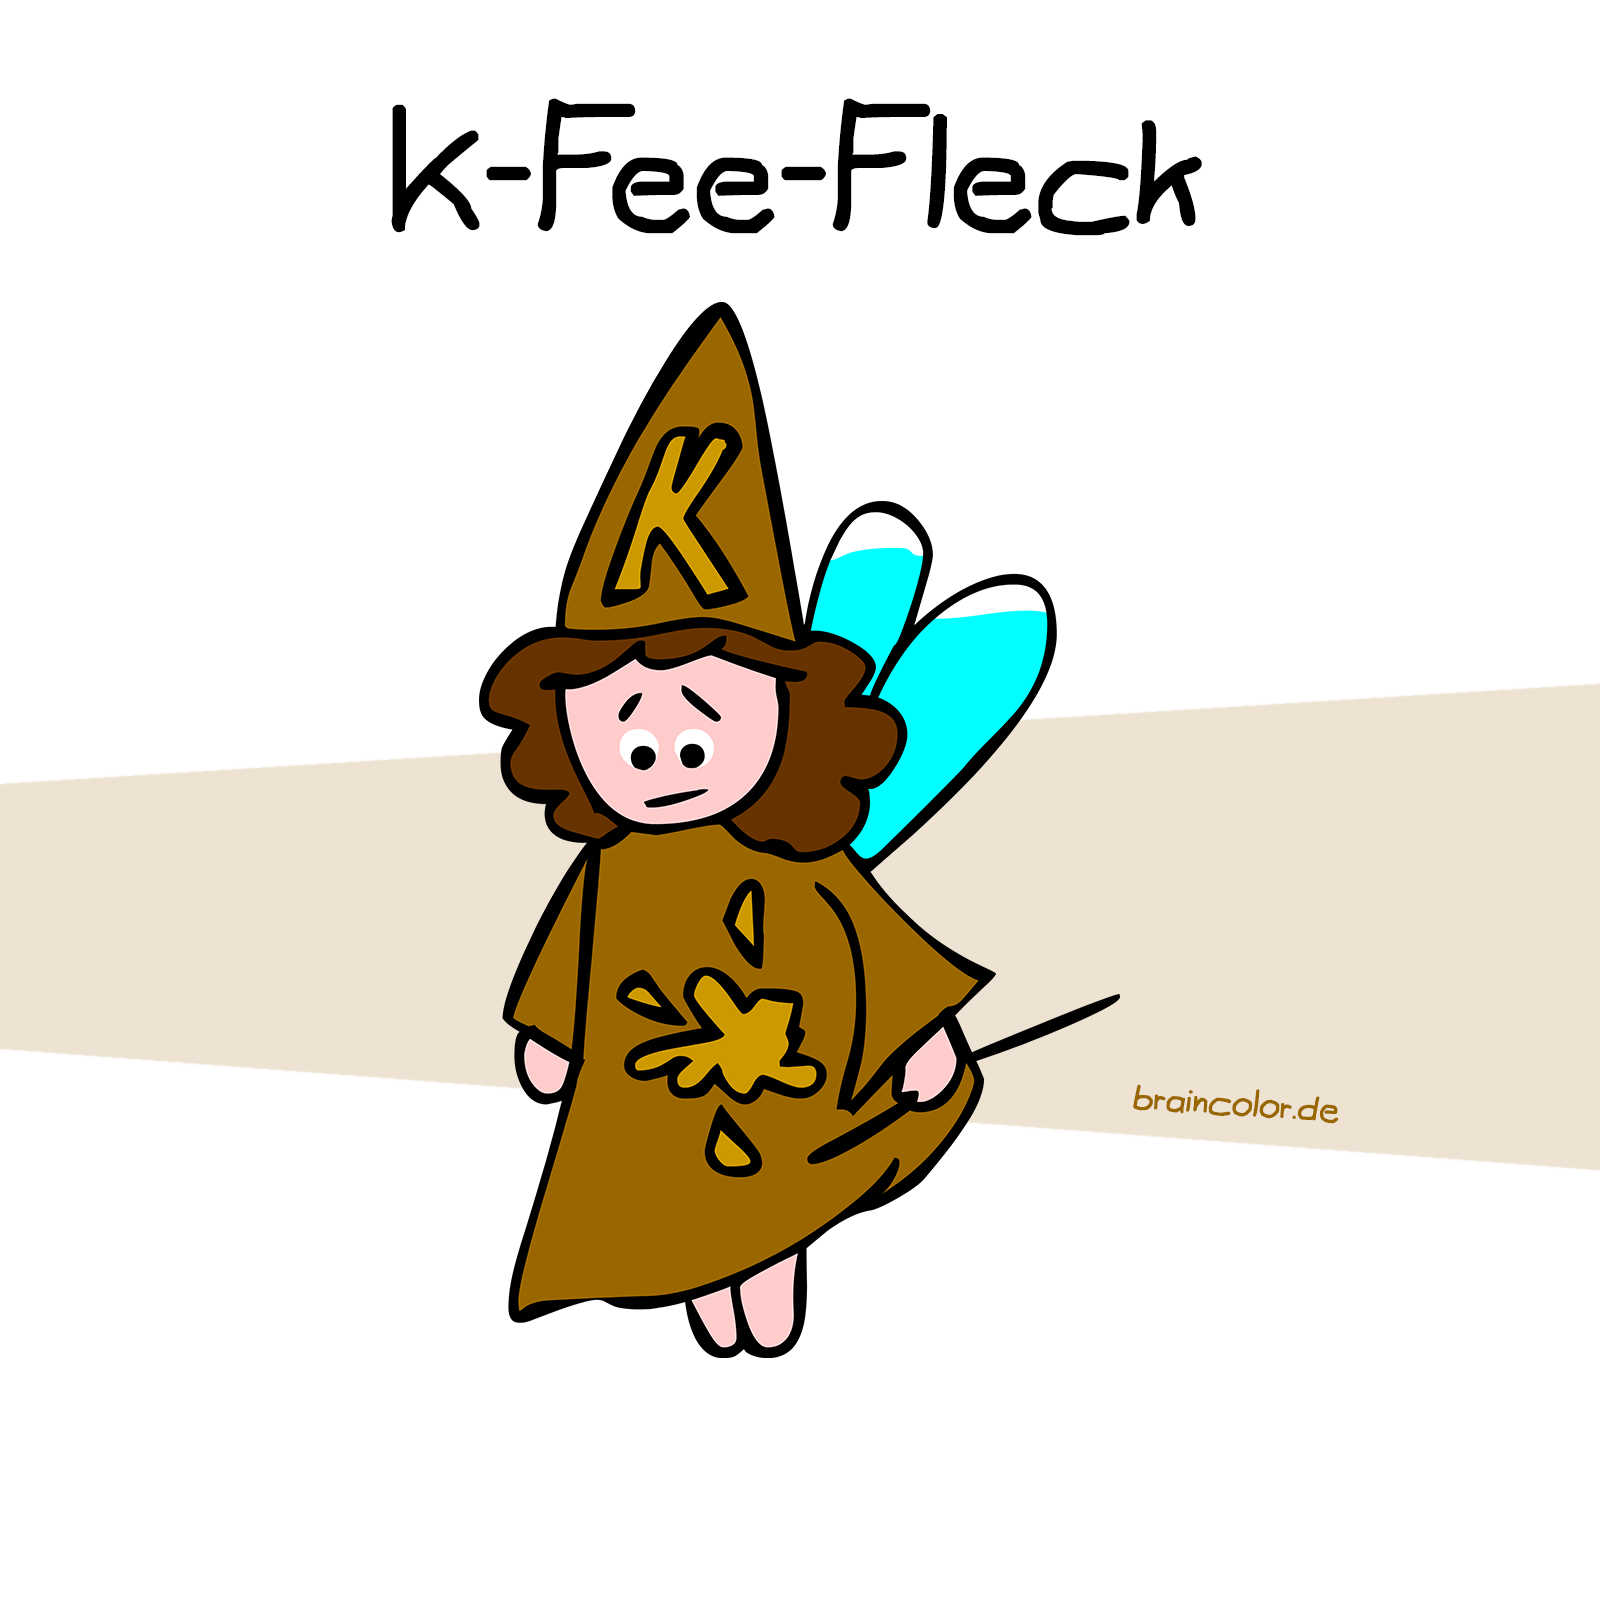 k-fee-fleck